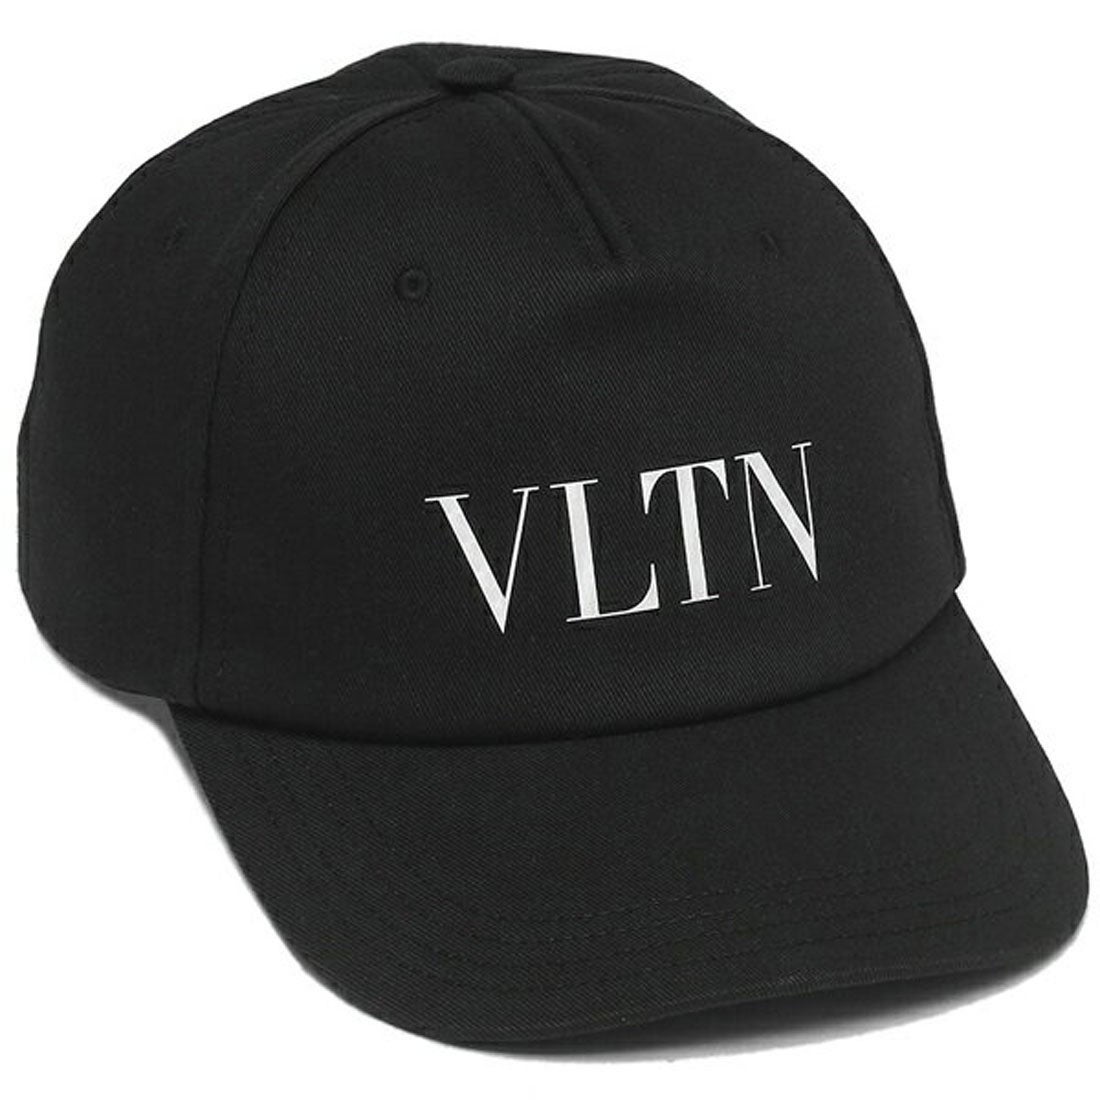 ヴァレンティノ ガラヴァーニ VALENTINO GARAVANI キャップ 帽子 VLTN ベースボールキャップ ブラック メンズ